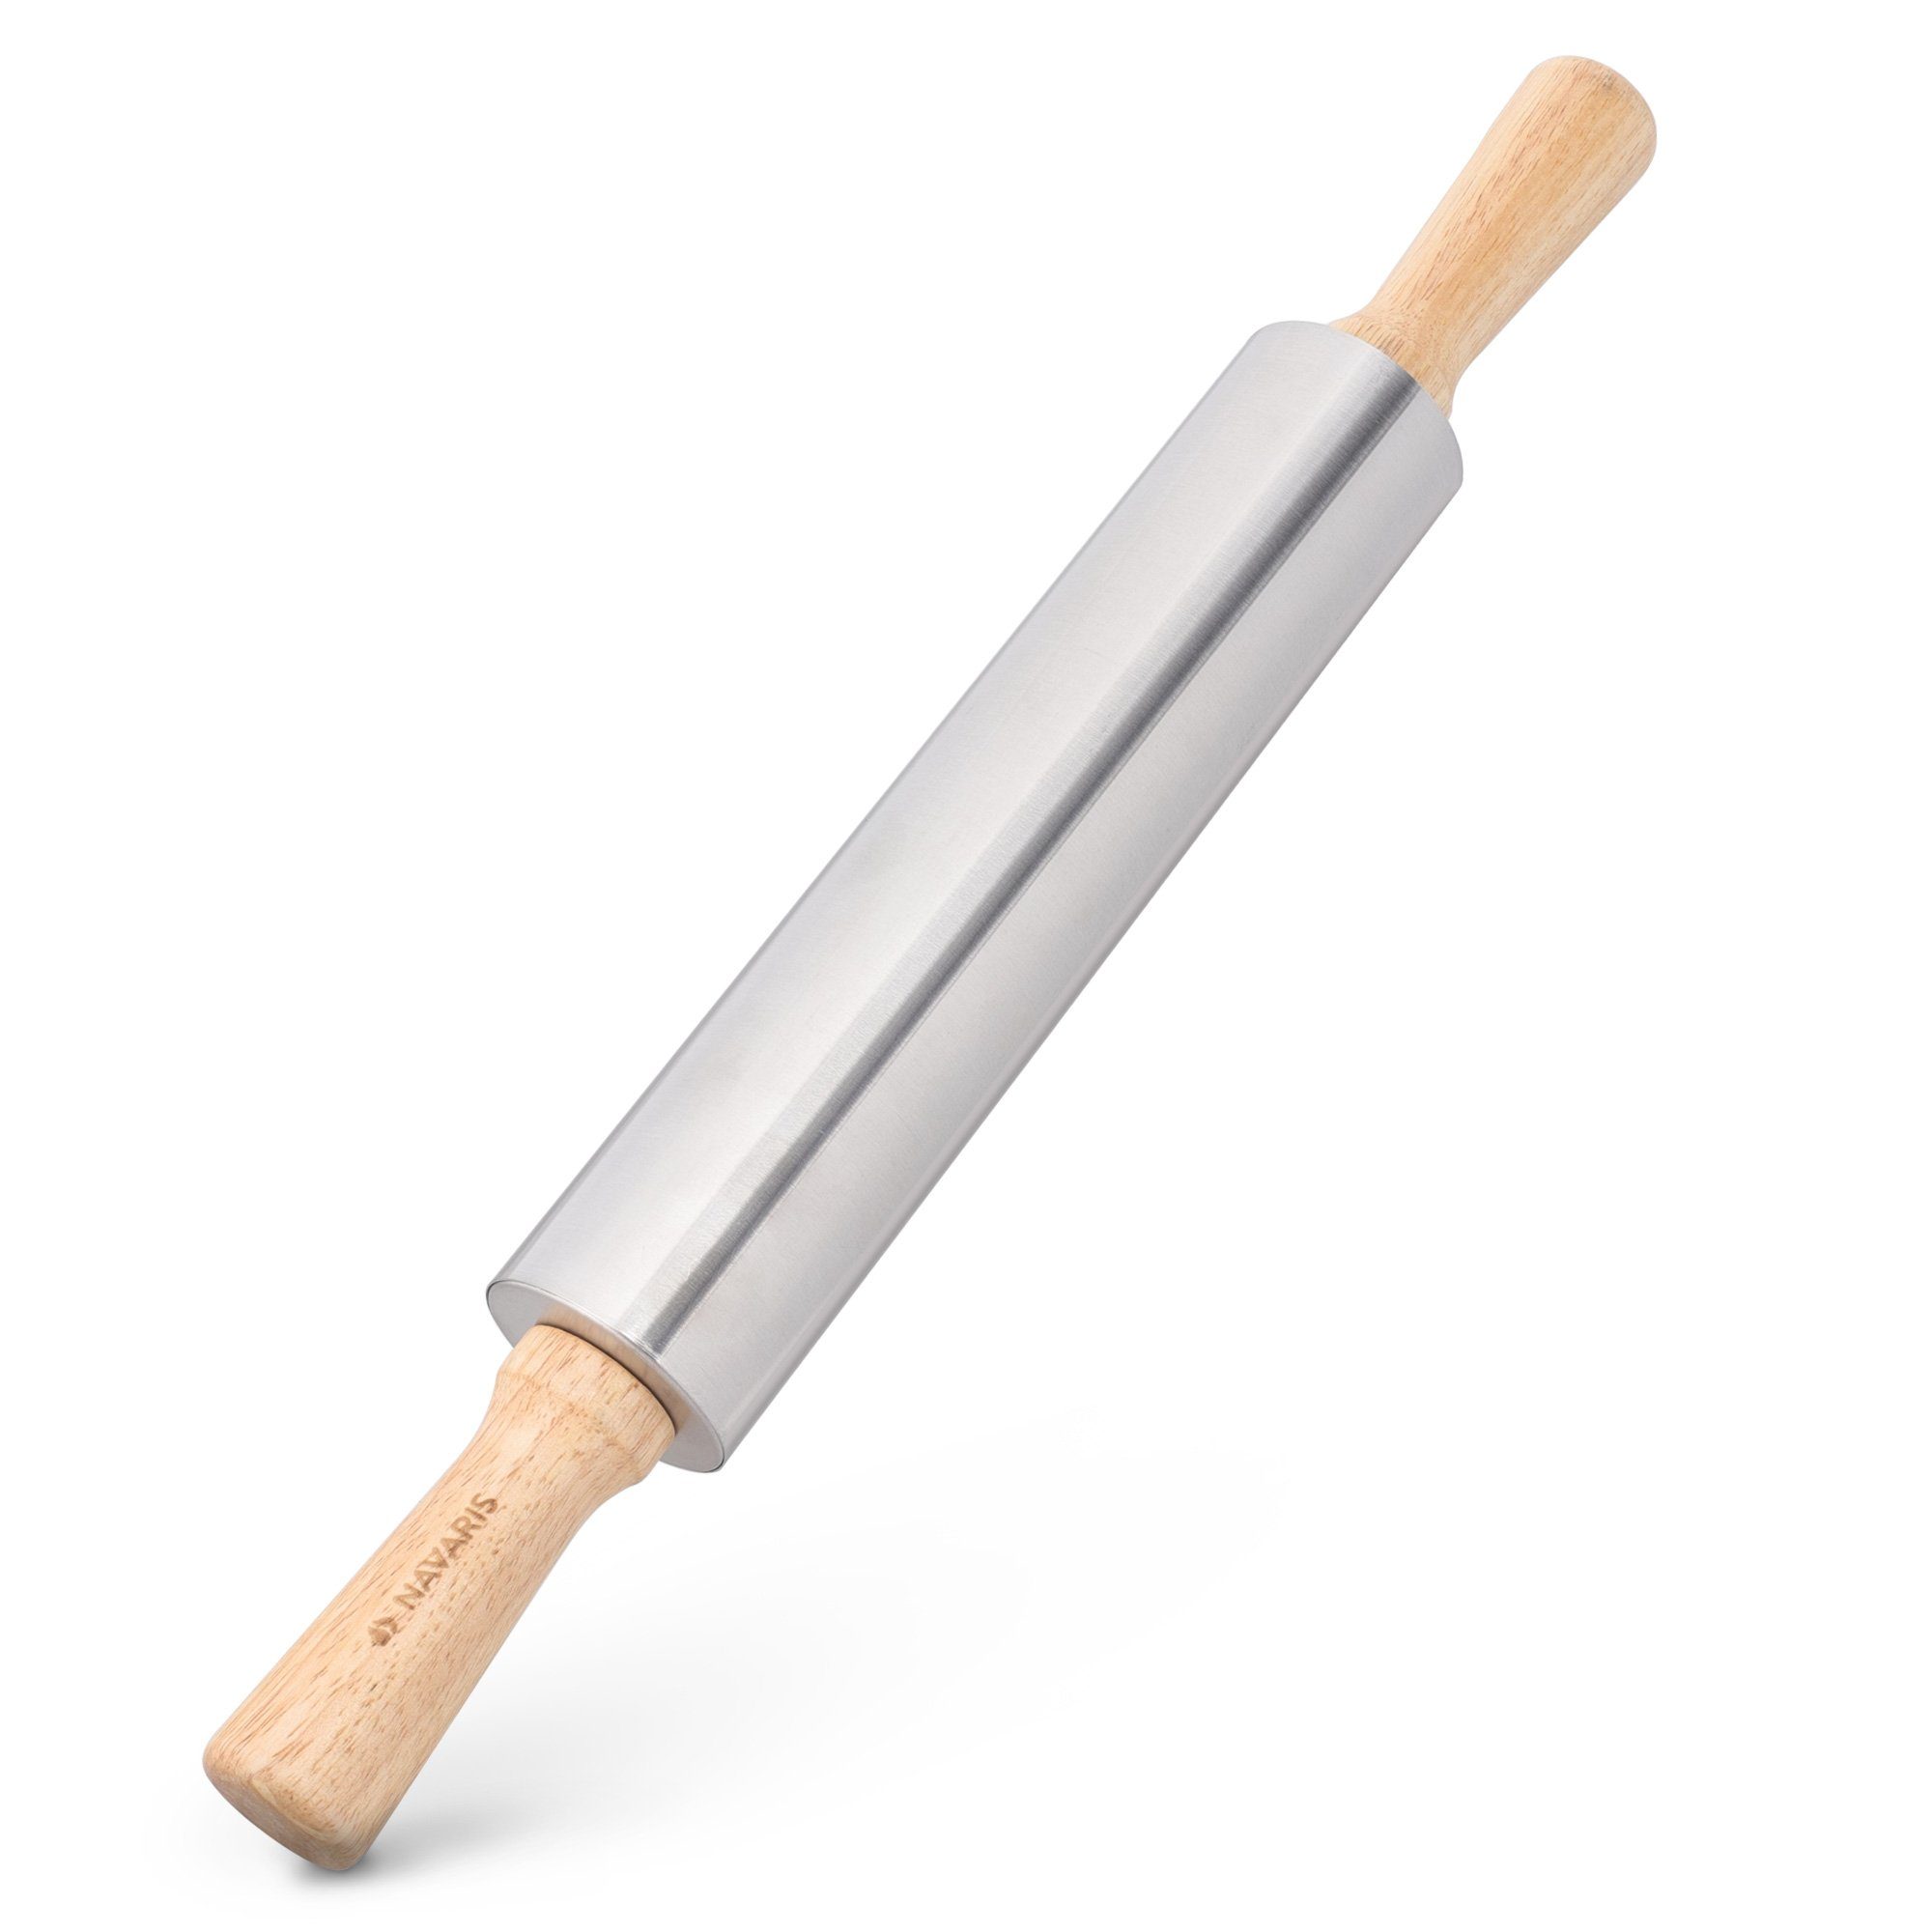 Gravidus Teigroller Teigrolle ohne Achse für Kinder Nudelholz Holz 25 cm